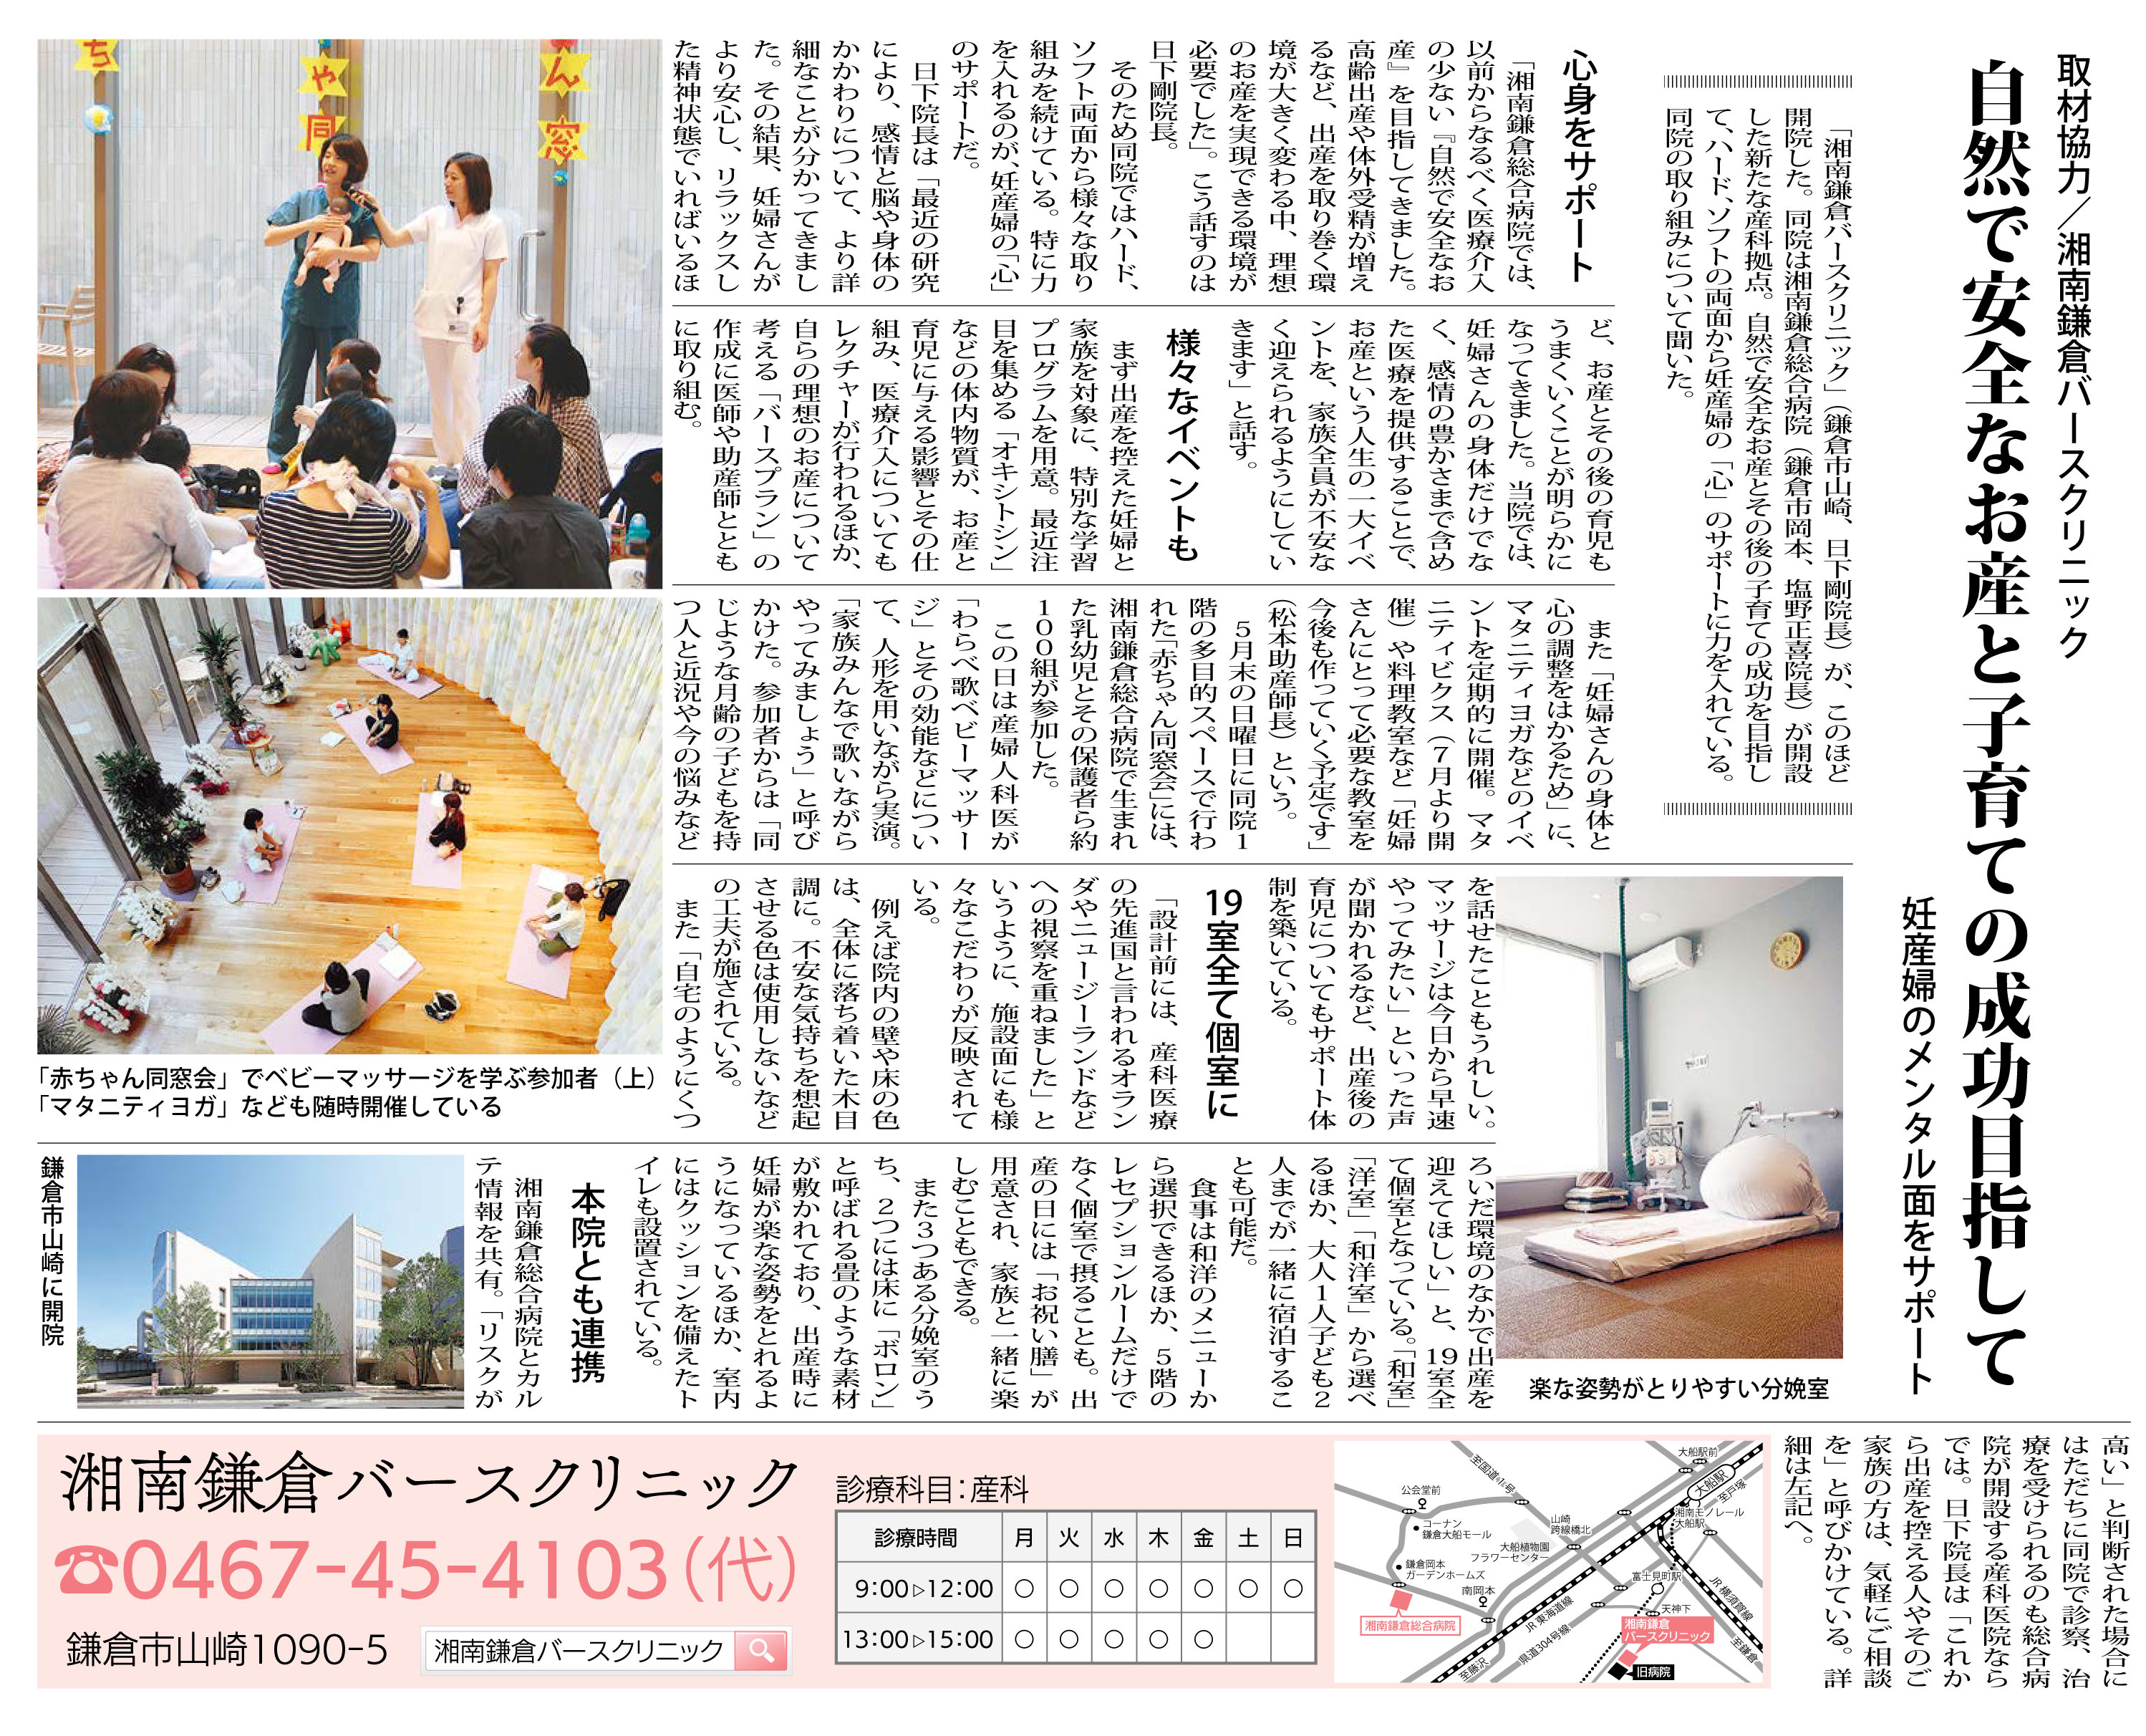 公式 タウンニュース で 湘南鎌倉バースクリニックが紹介されました 湘南鎌倉総合病院